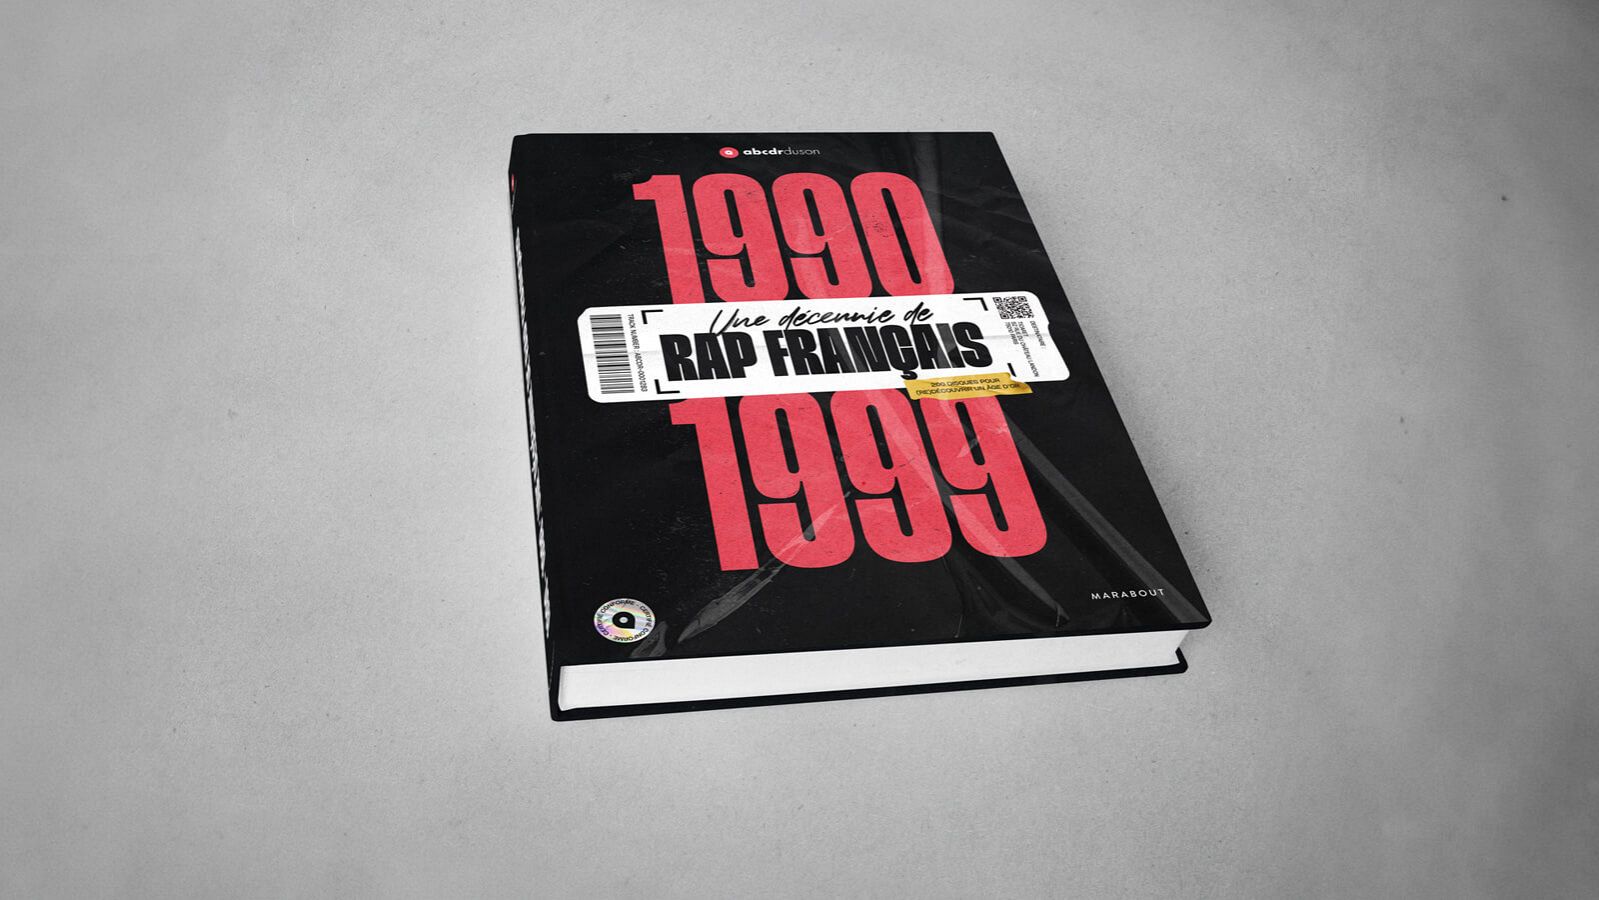 1990-1999, une décennie de rap français, le second livre de l'Abcdr du Son  - Article - Abcdr du Son